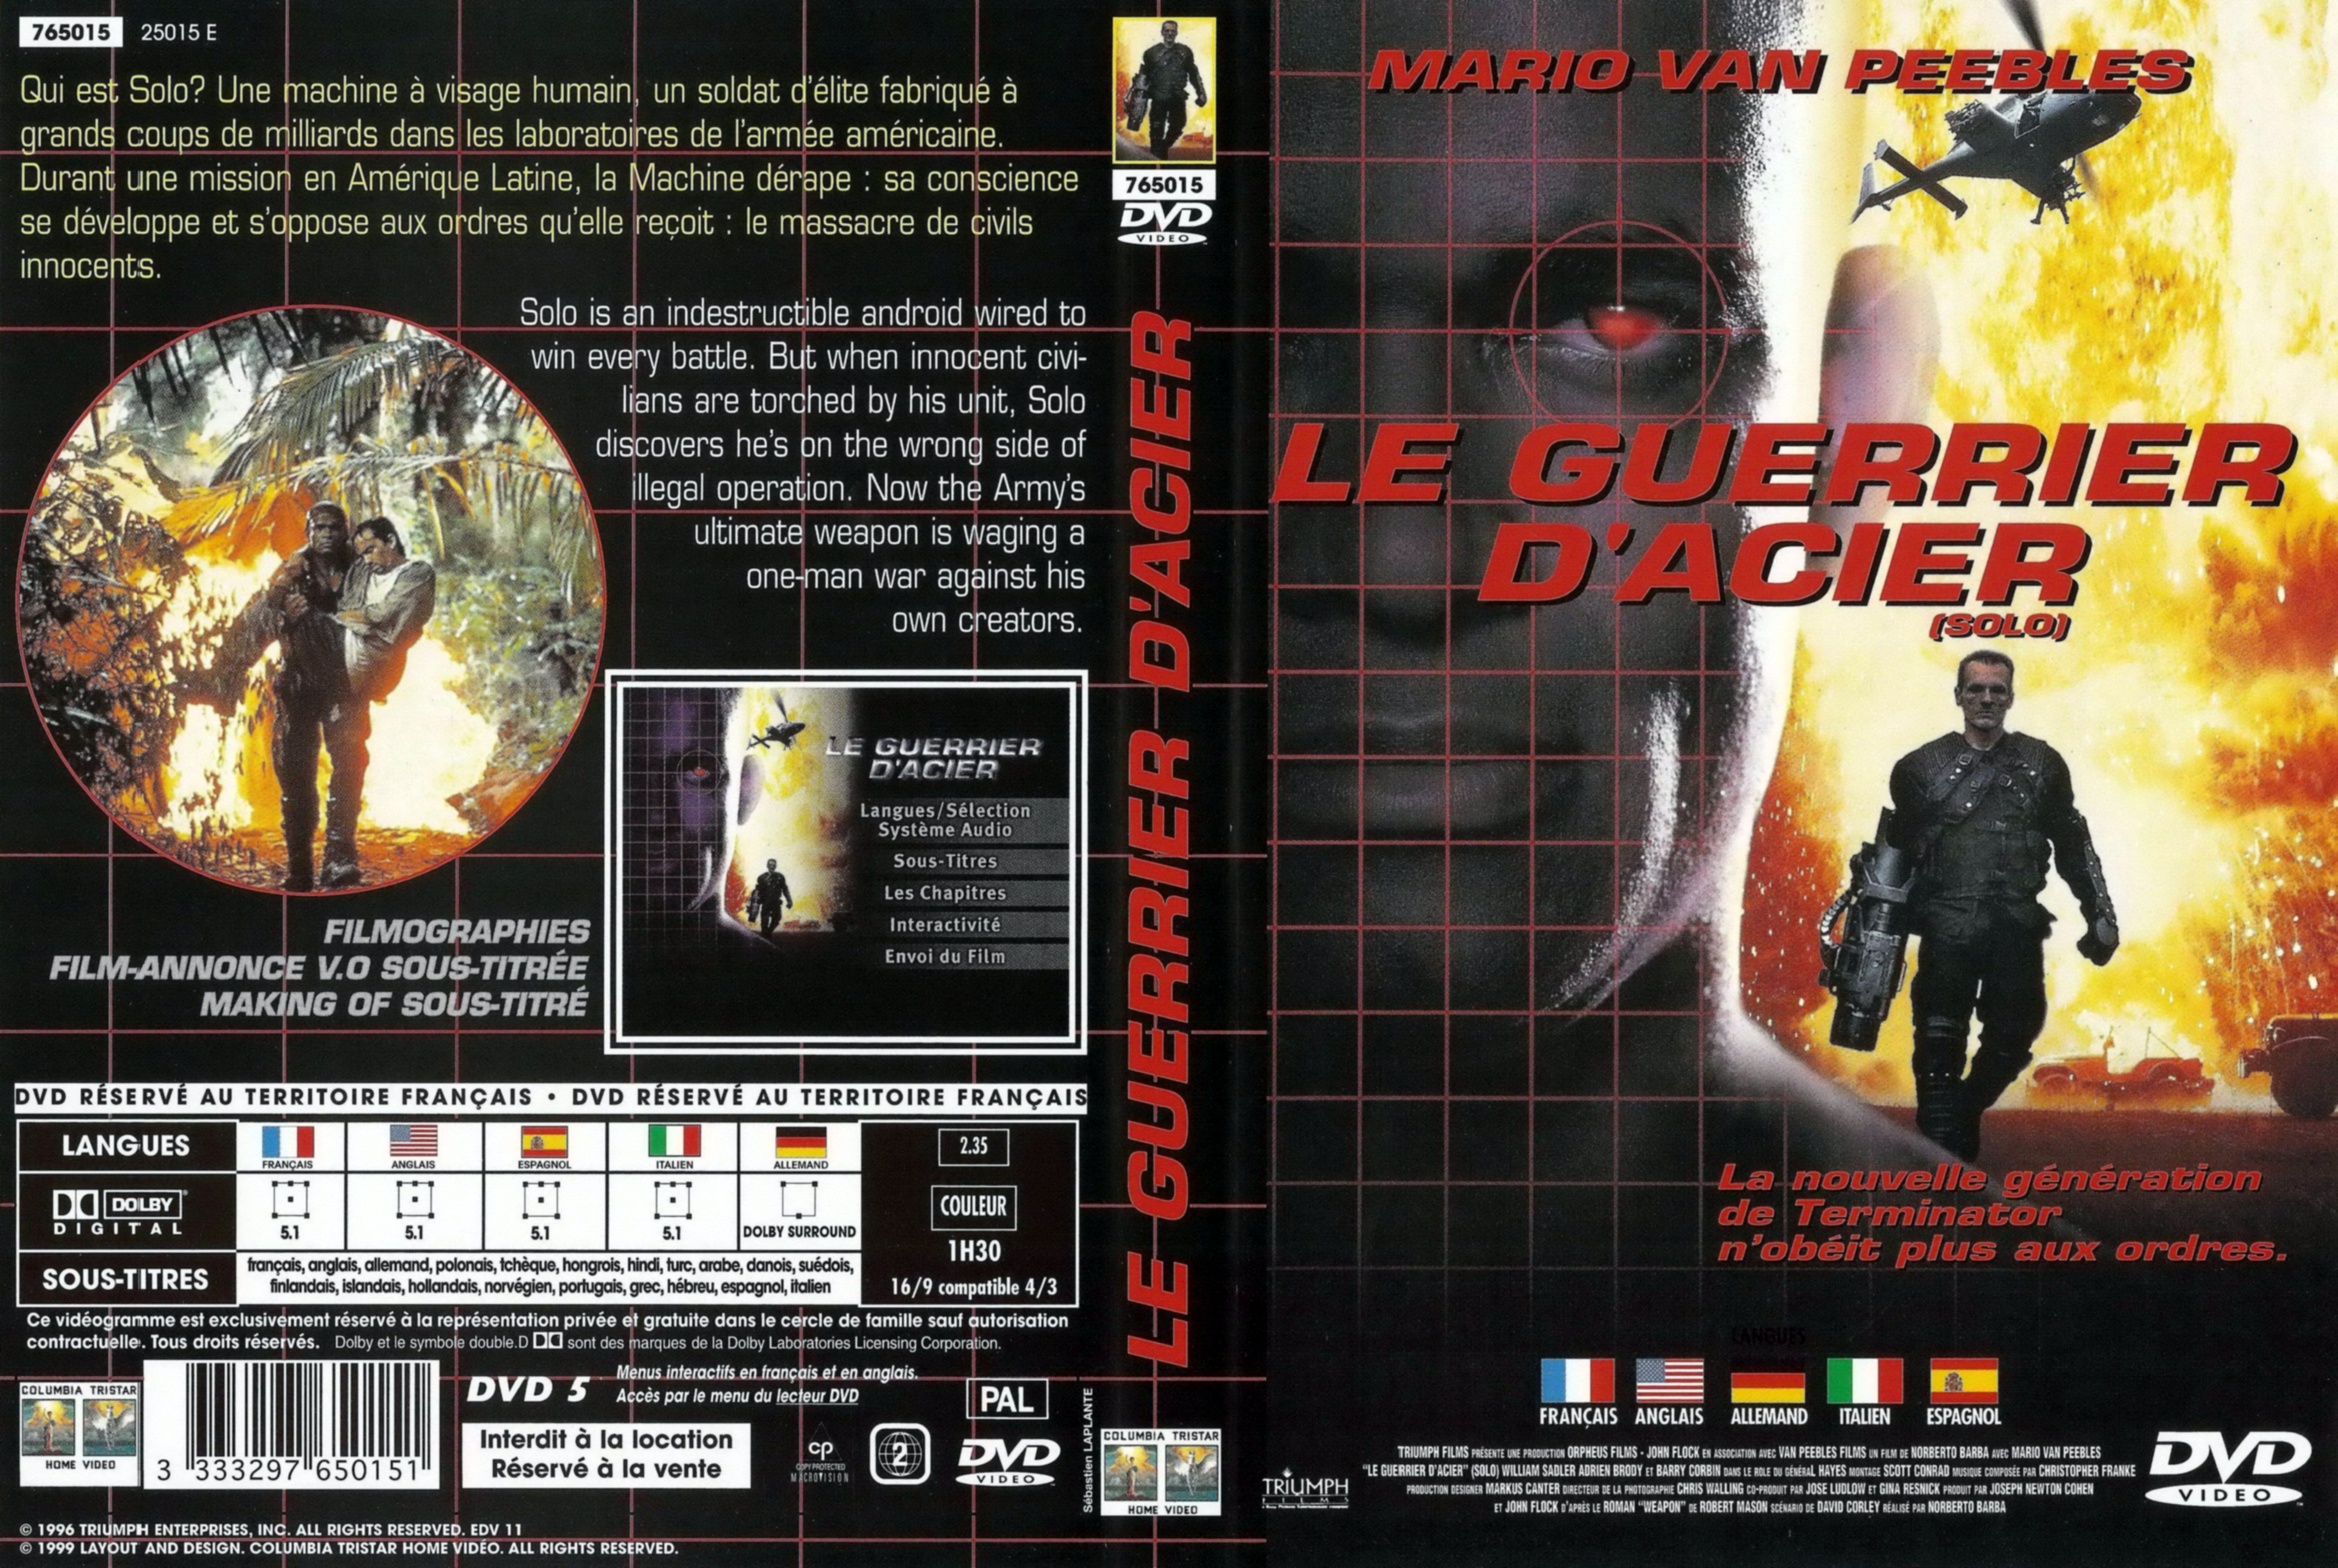 Jaquette DVD Le guerrier d